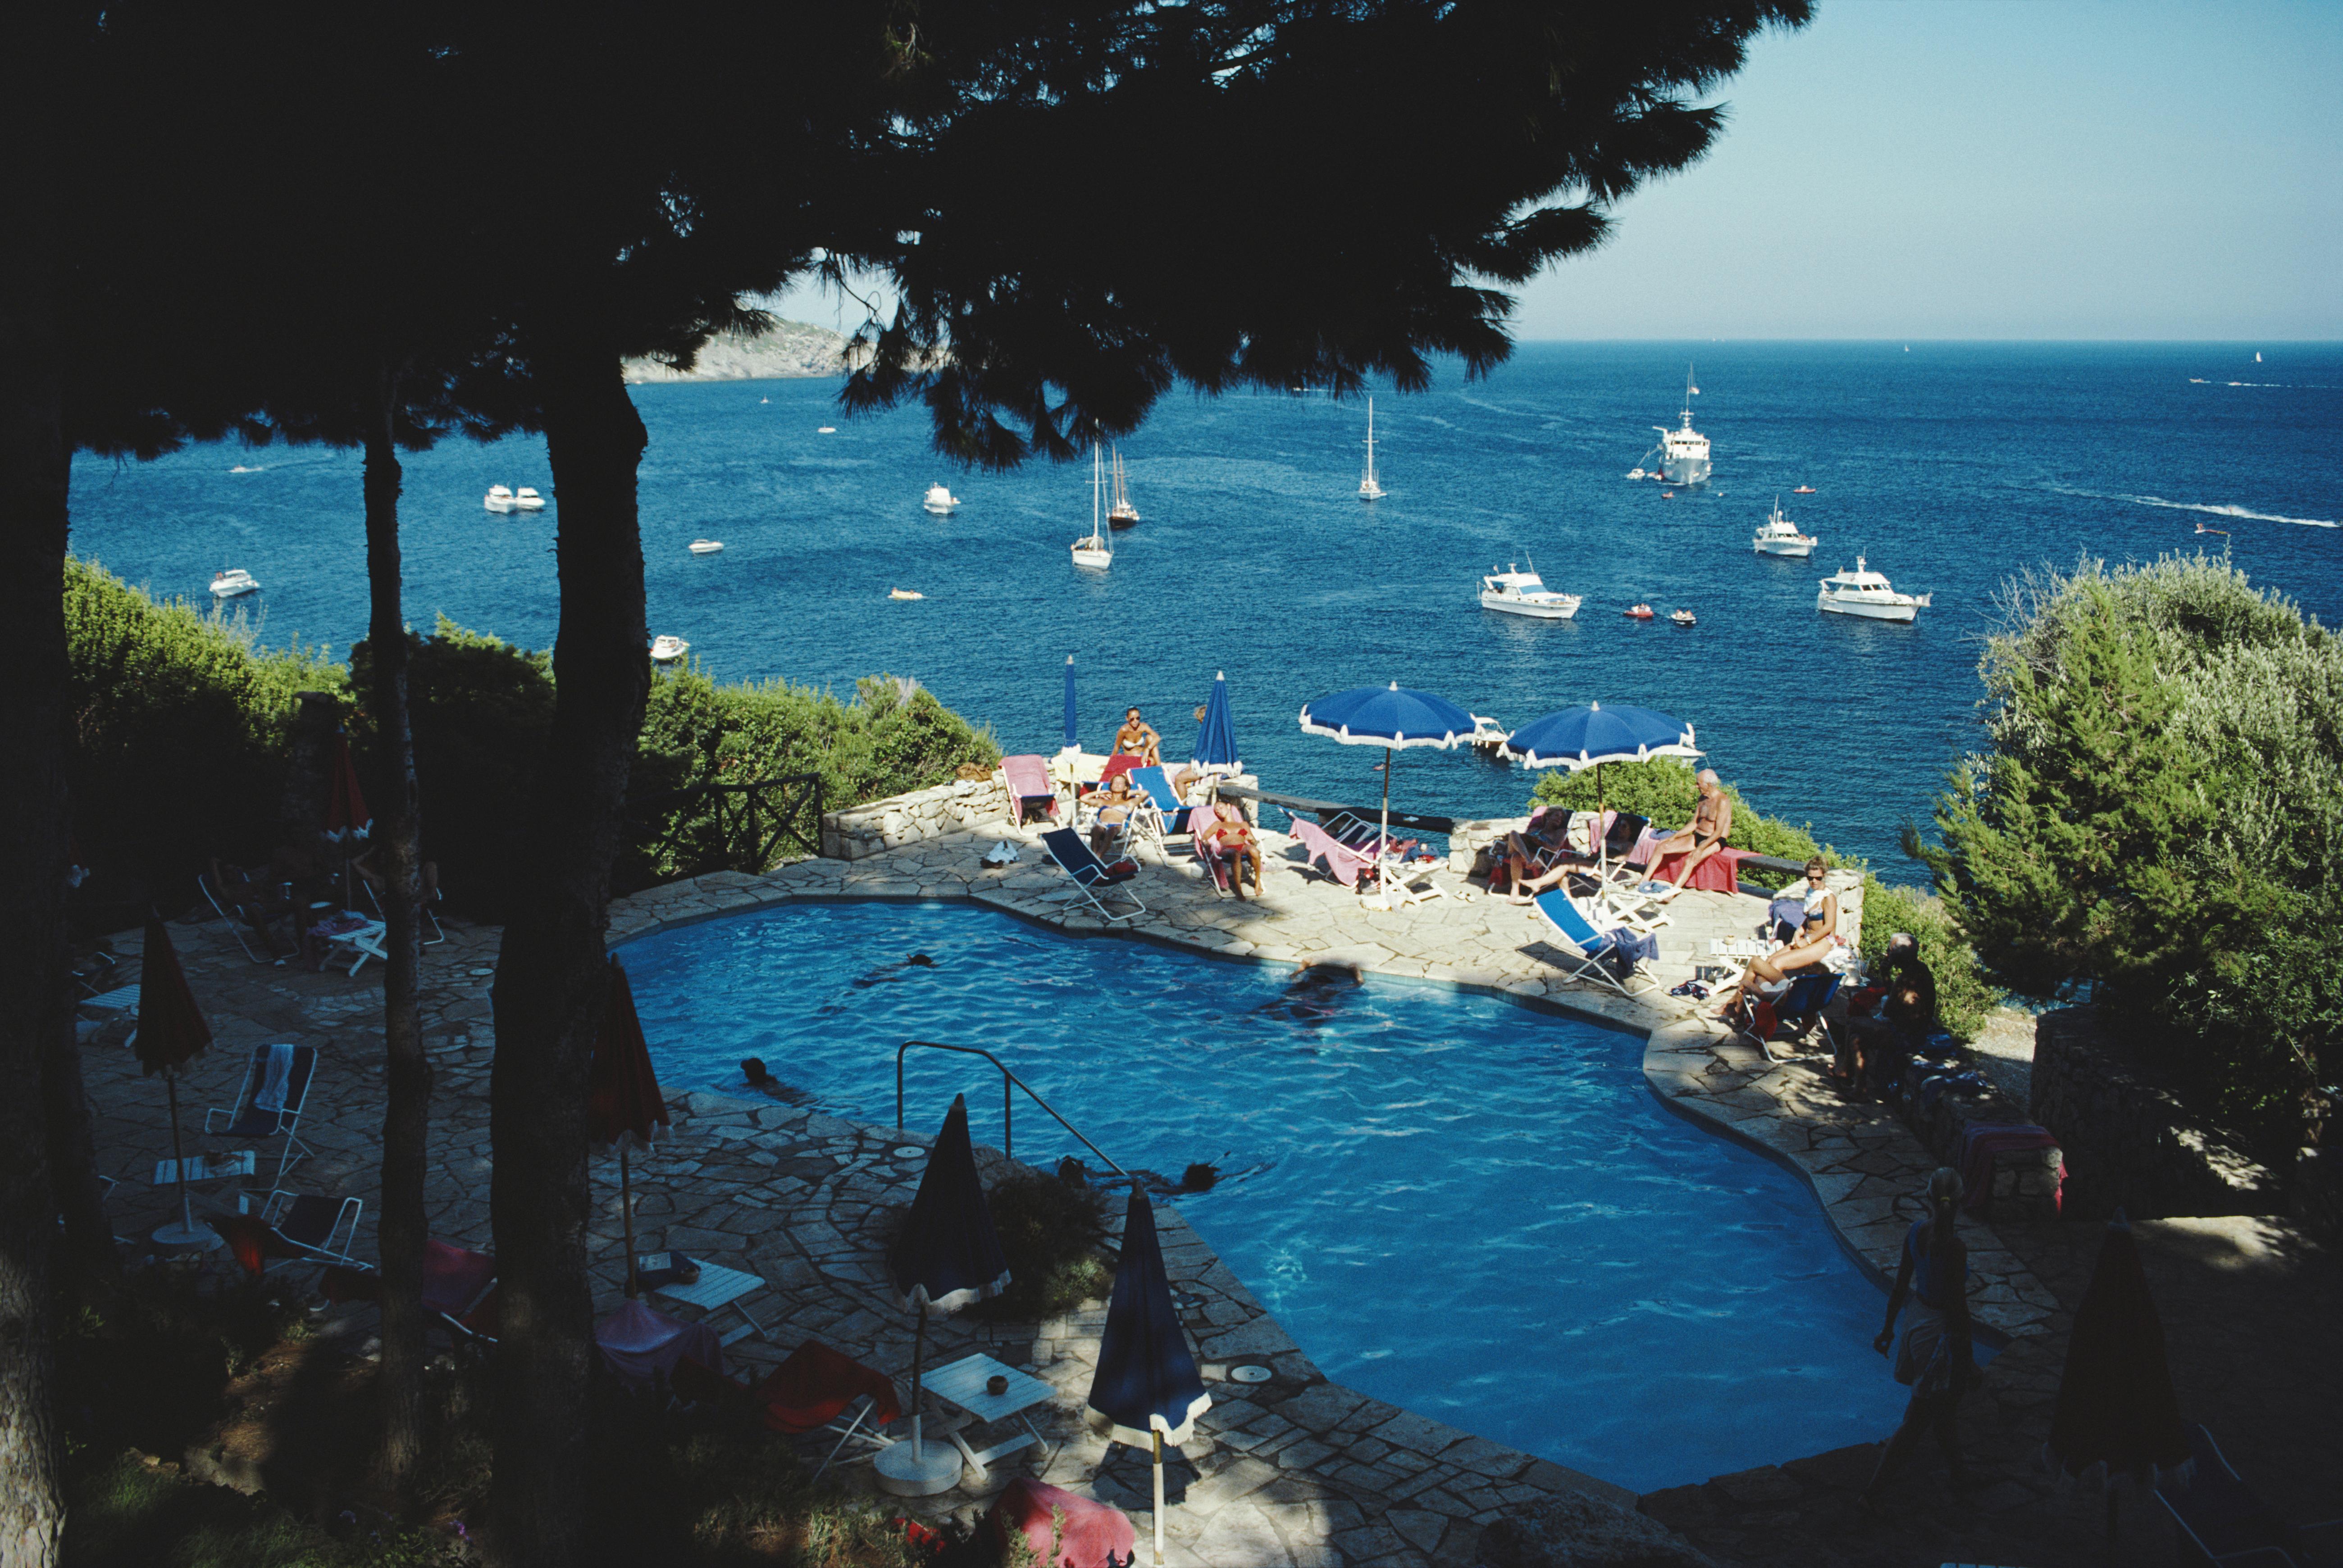 Des vacanciers se détendent au bord de la piscine de l'hôtel Il Pellicano à Porto Ercole, en Toscane, en 1987

Slim Aarons
Piscine Il Pellicano, 1987
Impression Lambda
4 tailles disponibles
Slim Aarons Estate Edition

40 x 60 pouces
$3950

30 x 40